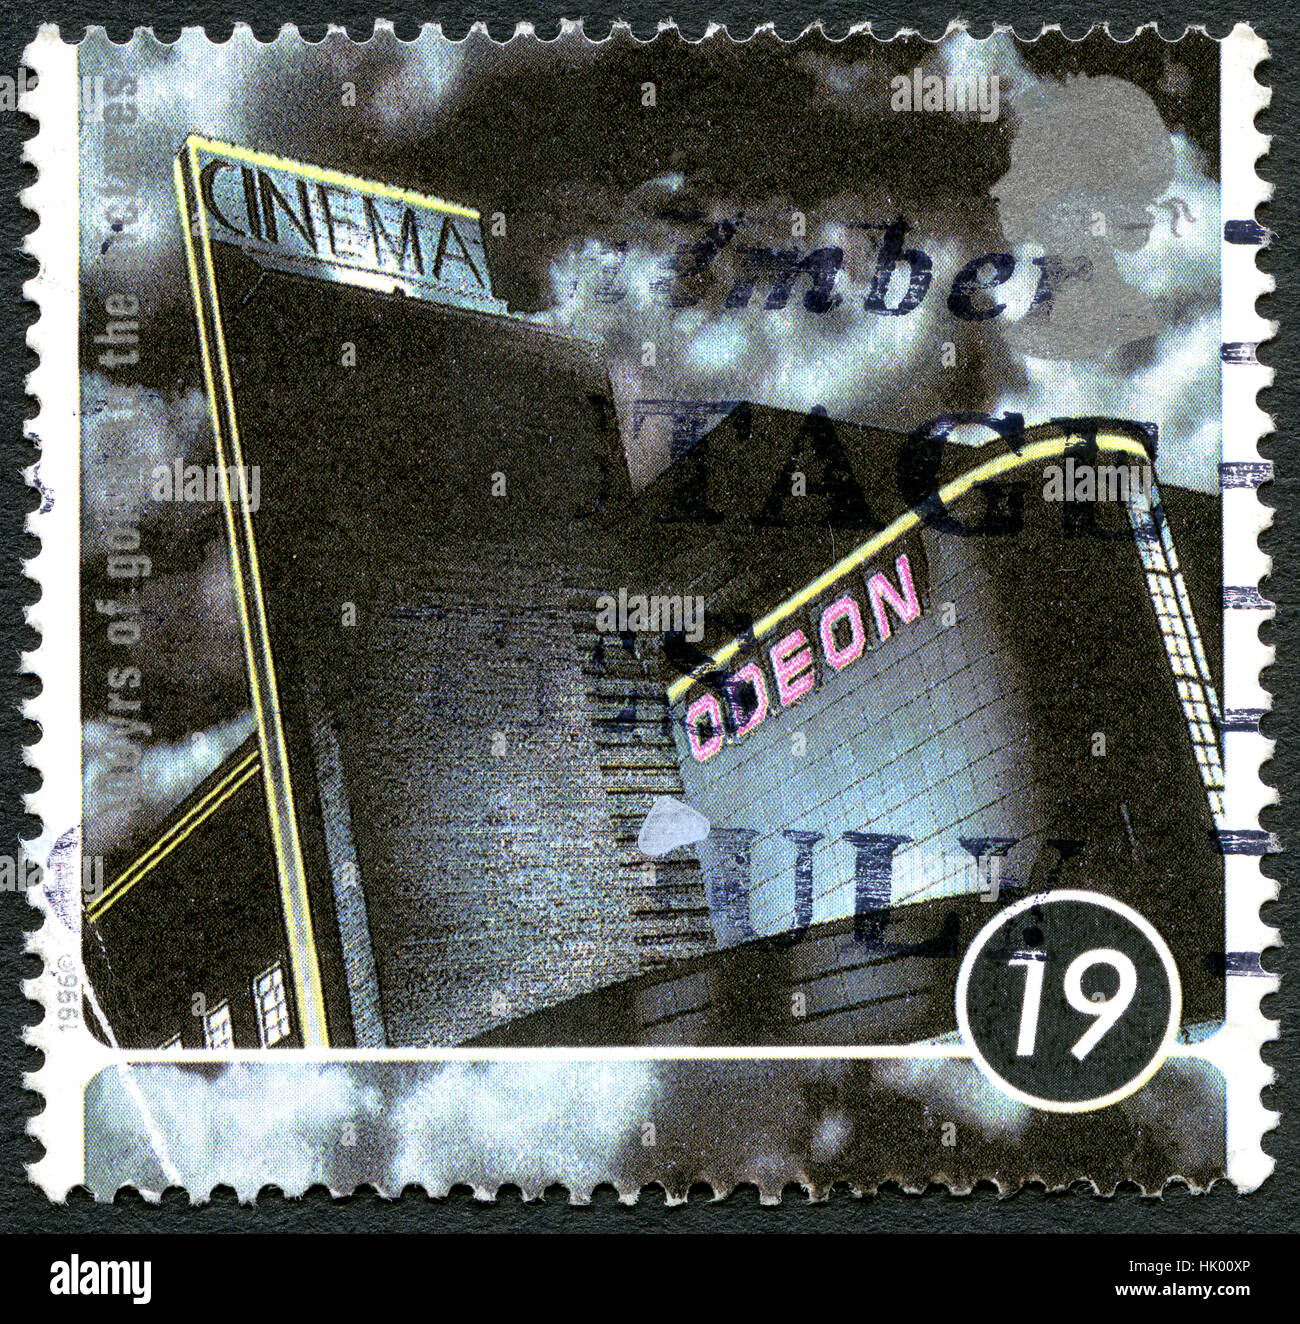 Großbritannien - CIRCA 1996: Eine gebrauchte Briefmarke aus dem Vereinigten Königreich, feiert 100 Jahre gehen, die Bilder, ca. 1996. Stockfoto